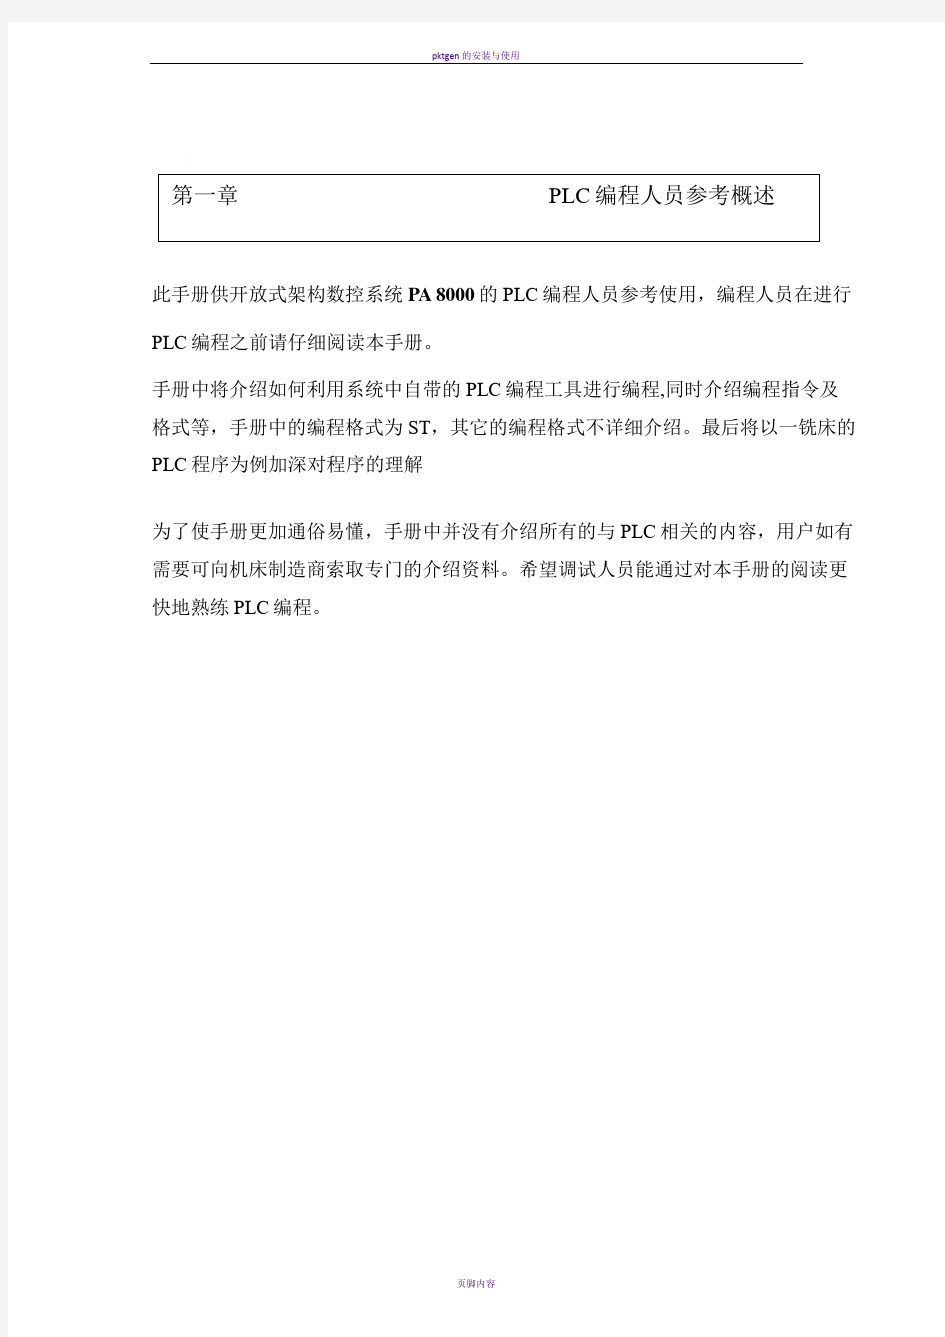 PLC中文手册与结构化文本编程